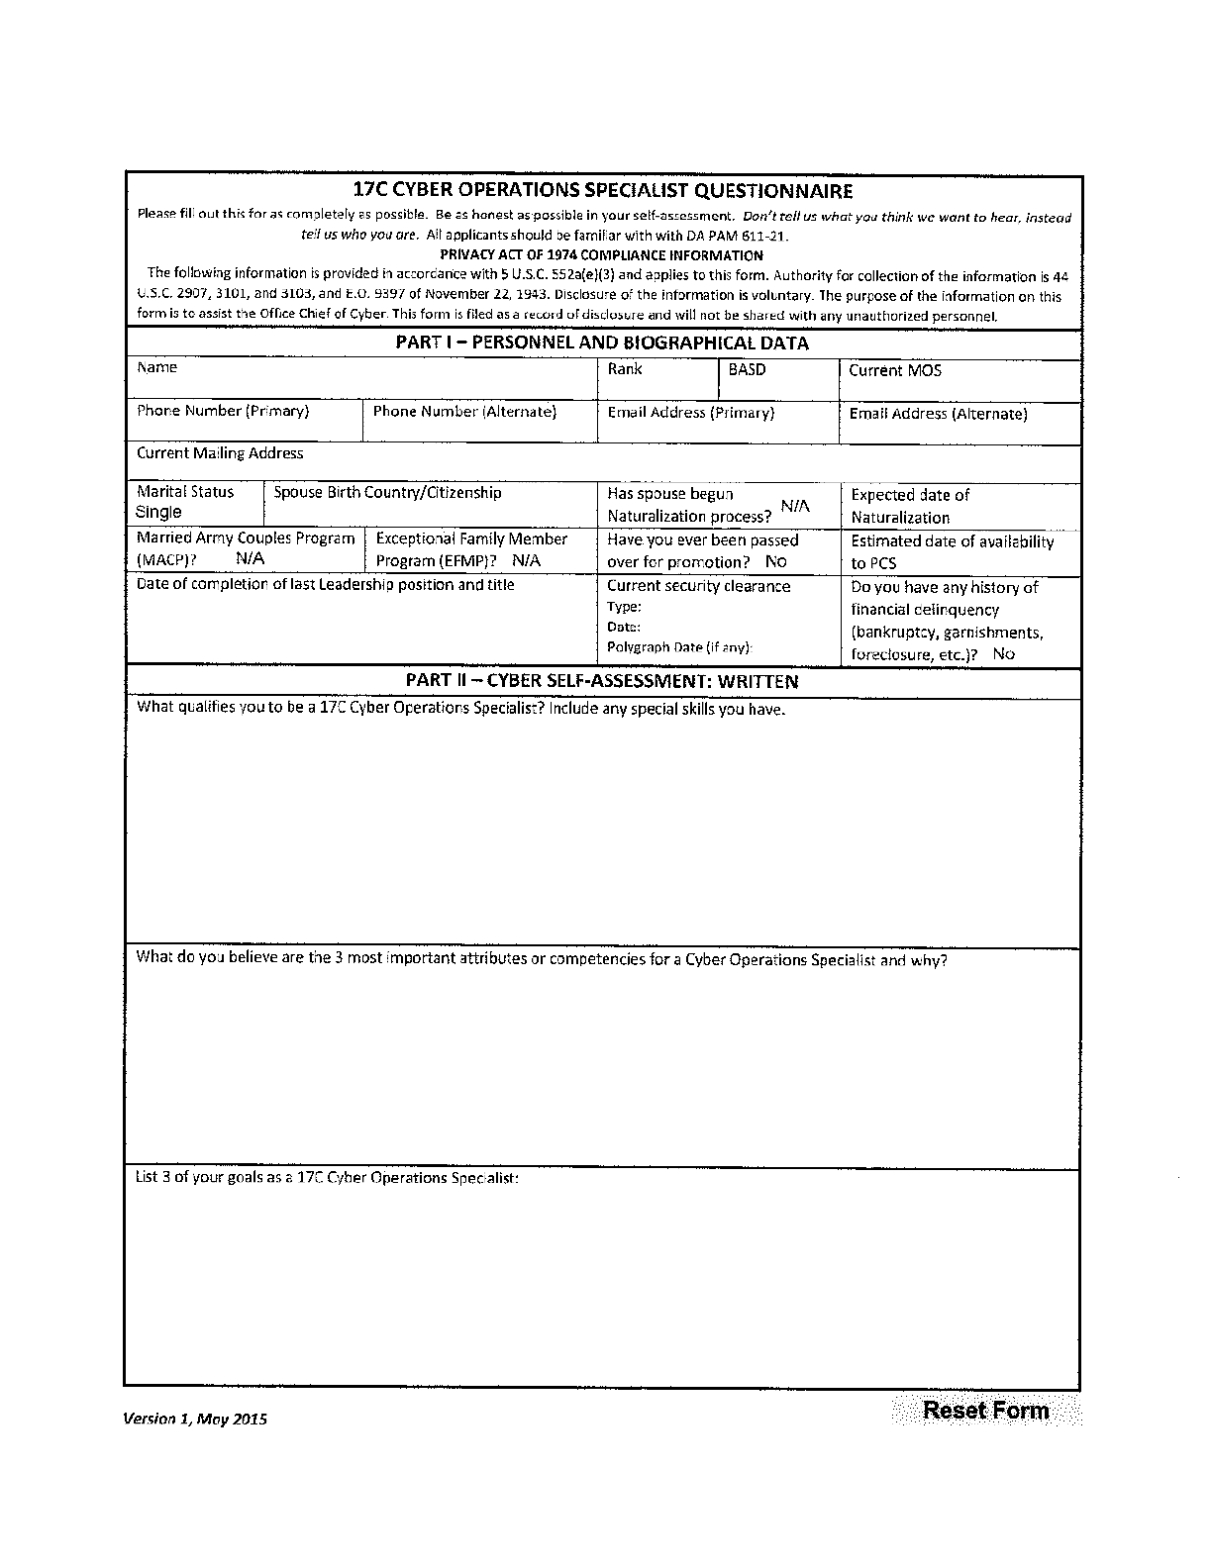 Official Memorandum Format For Army Free Download Regarding Memorandum Of Agreement Template Army